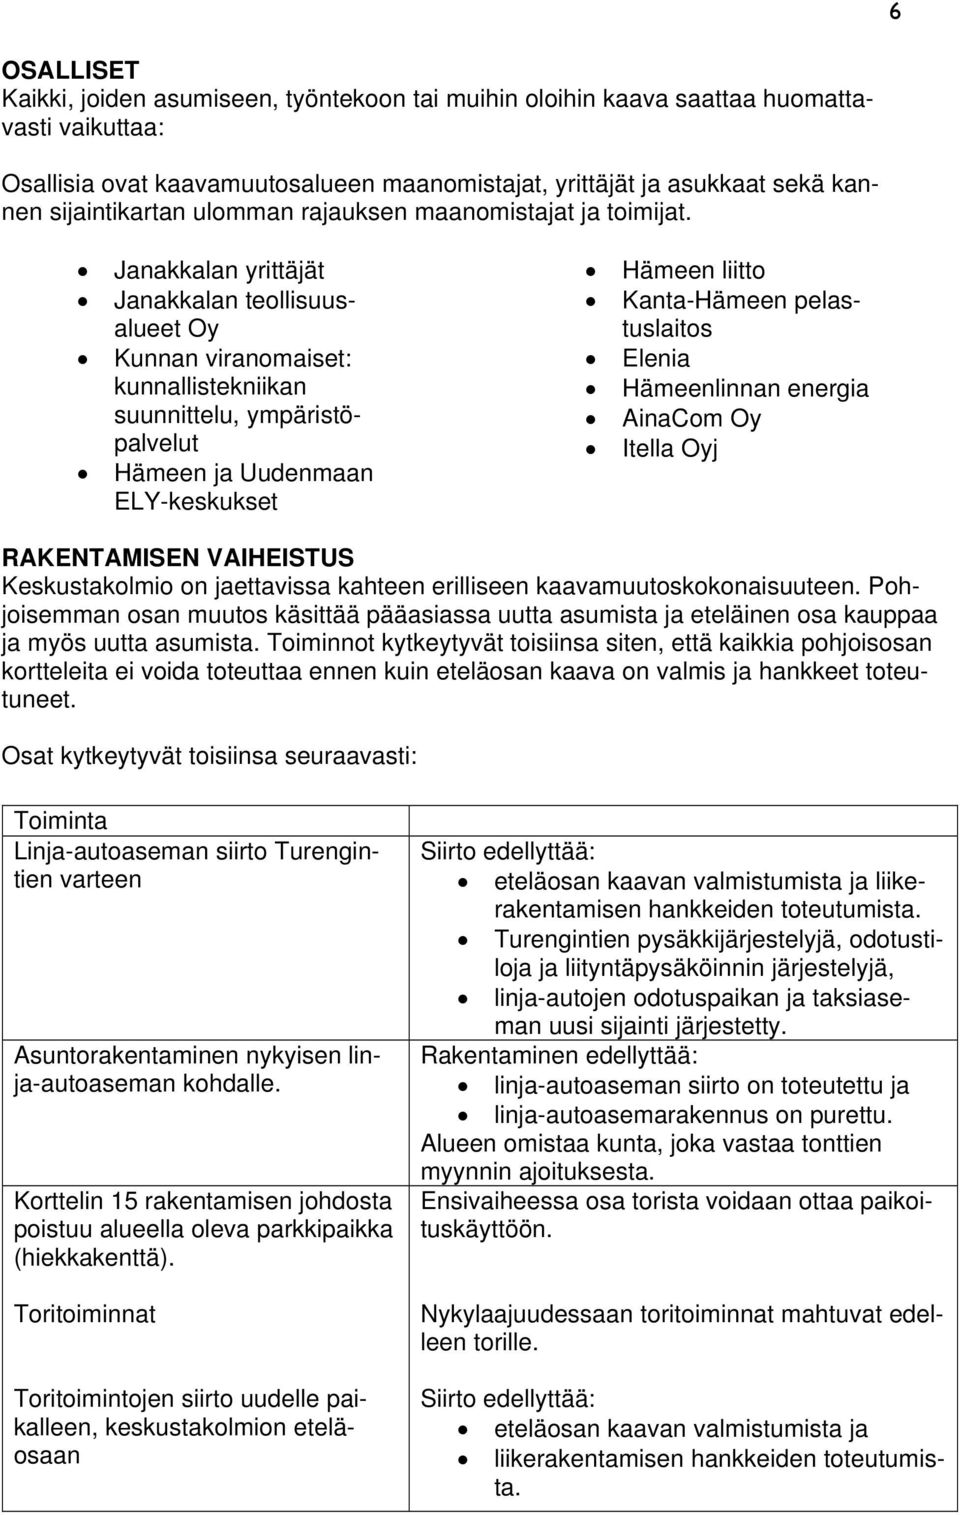 Janakkalan yrittäjät Janakkalan teollisuusalueet Oy Kunnan viranomaiset: kunnallistekniikan suunnittelu, ympäristöpalvelut Hämeen ja Uudenmaan ELY-keskukset Hämeen liitto Kanta-Hämeen pelastuslaitos